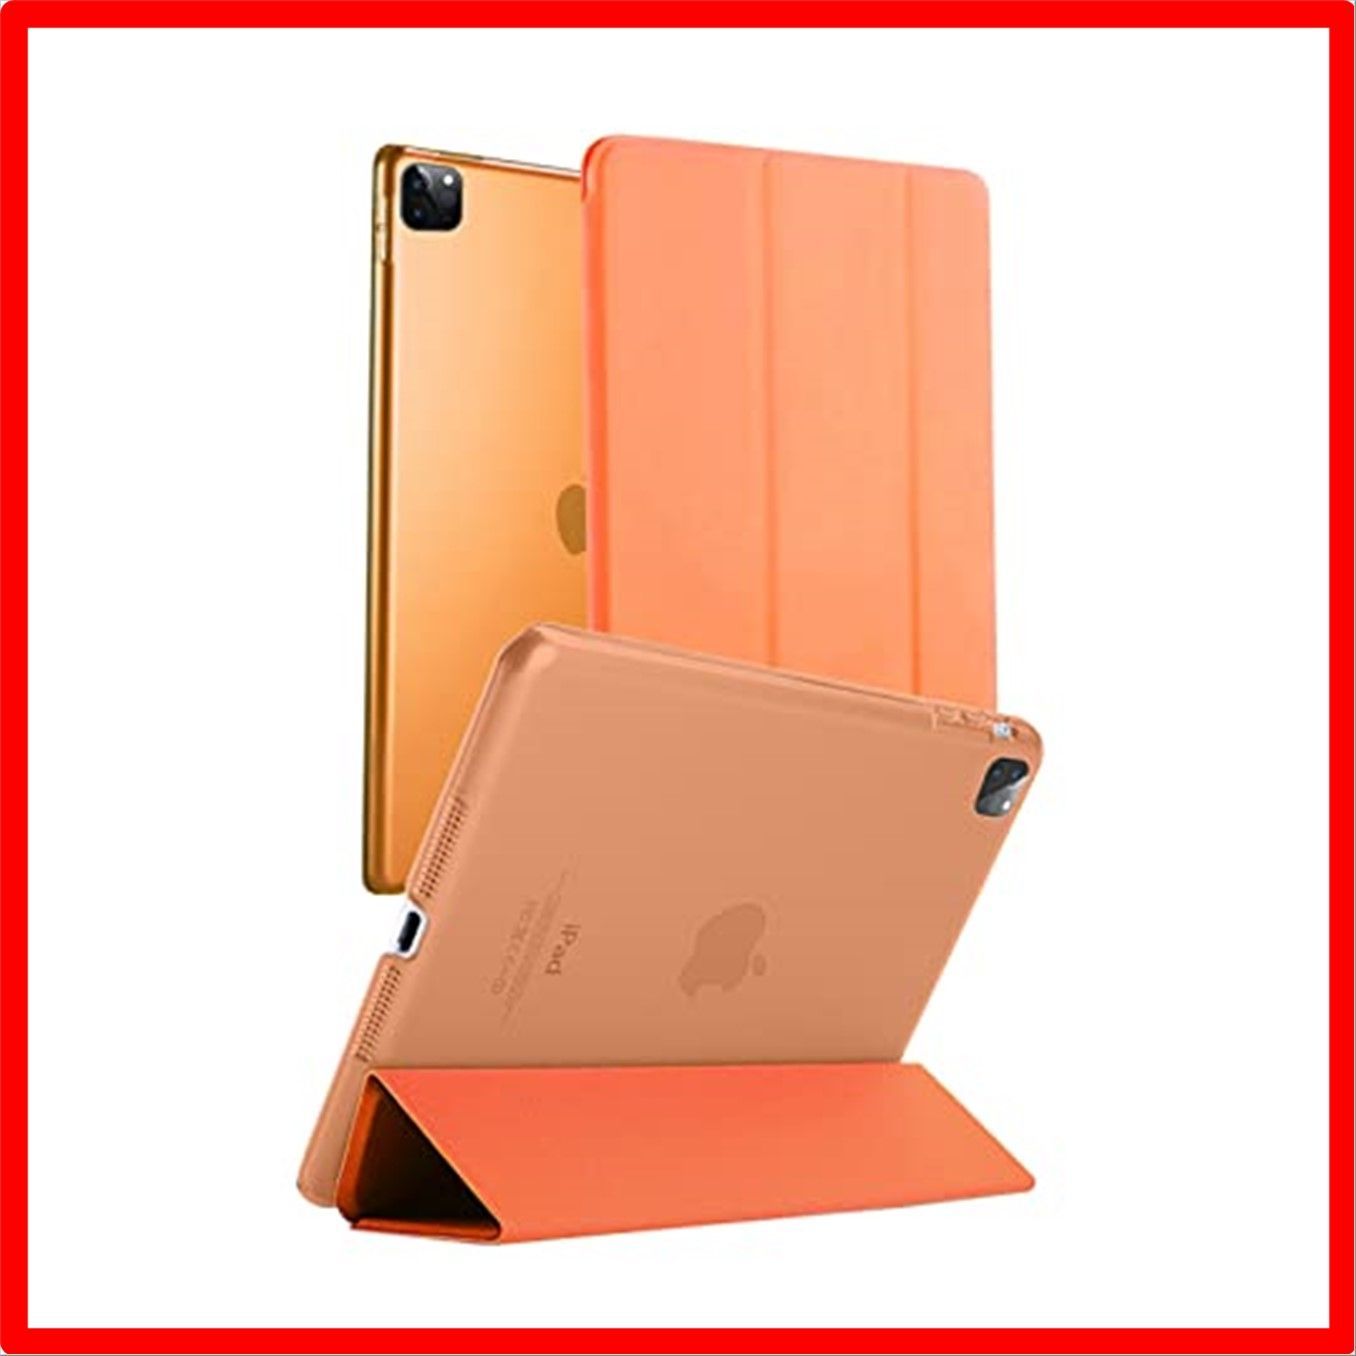 売店 iPad ケース オレンジ 第9世代 第8世代 第7世代 10.2インチ